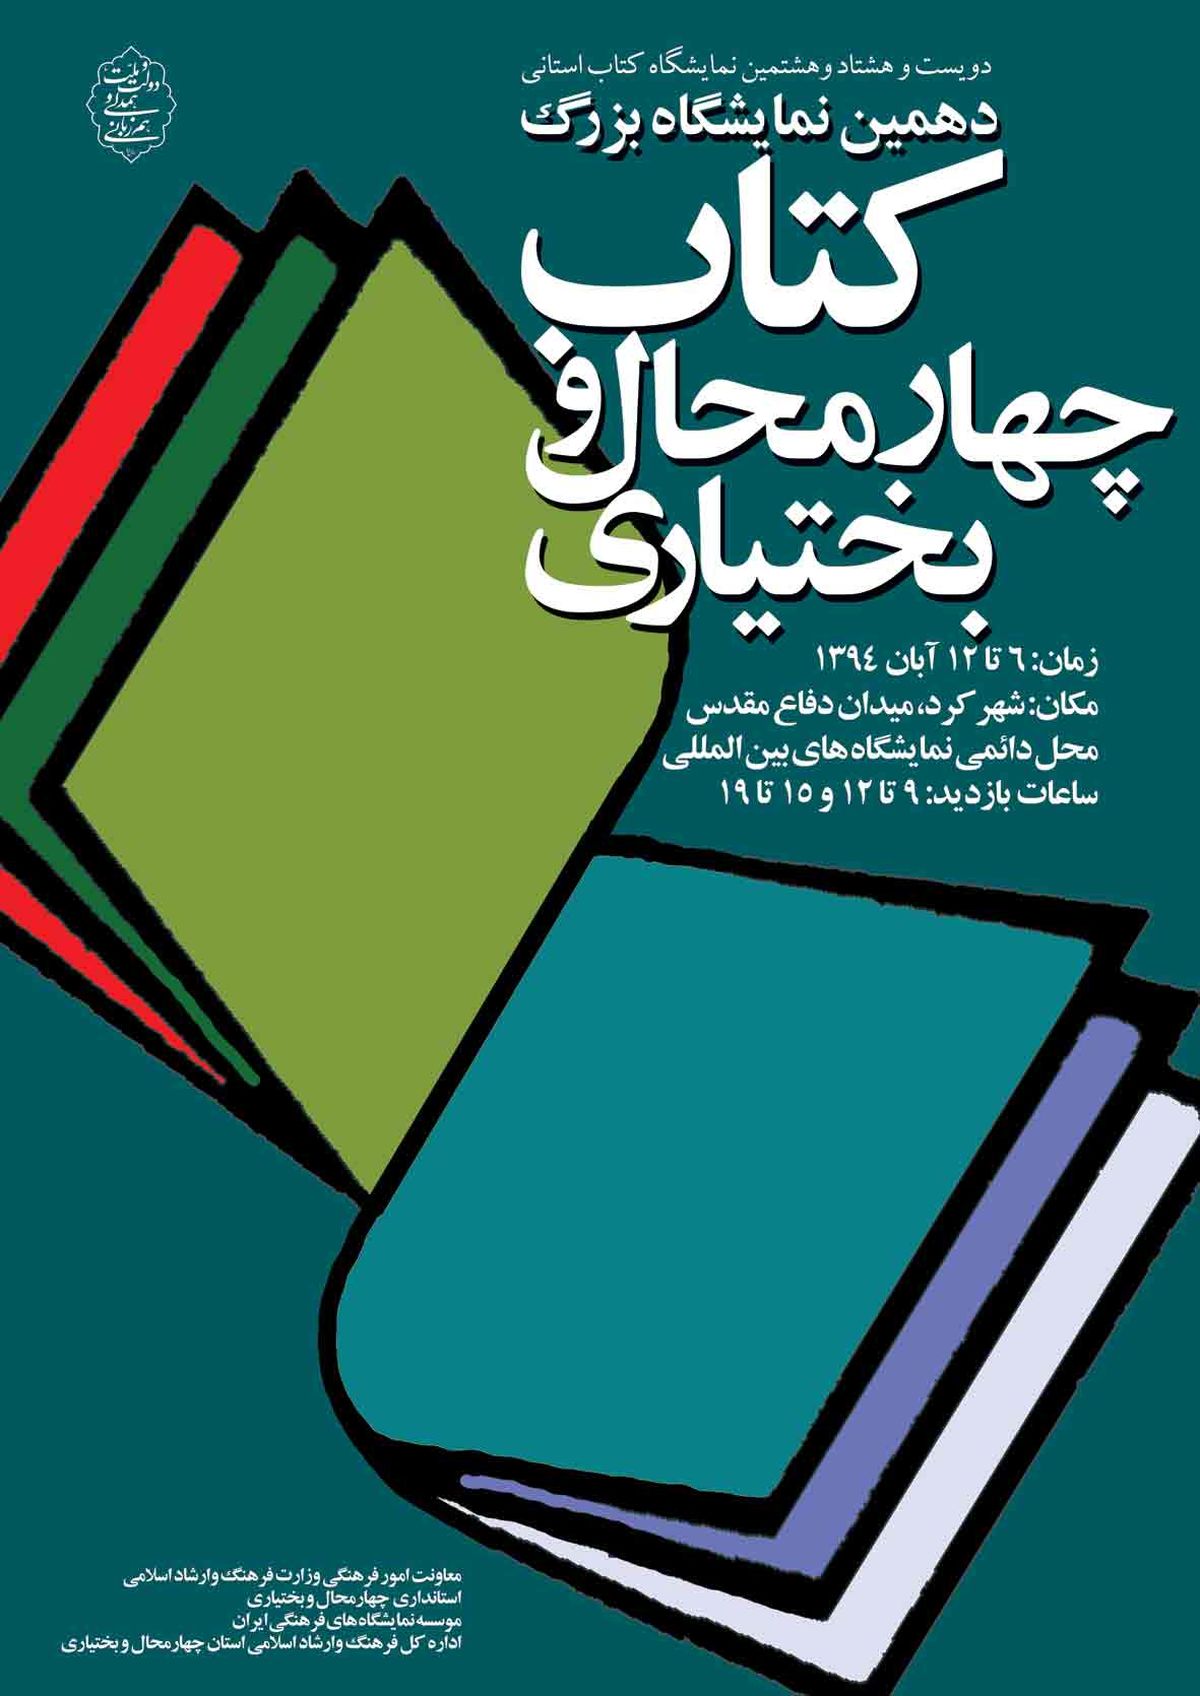 شهرکرد میزبان دویست و هشتاد و هشتمین نمایشگاه کتاب استانی